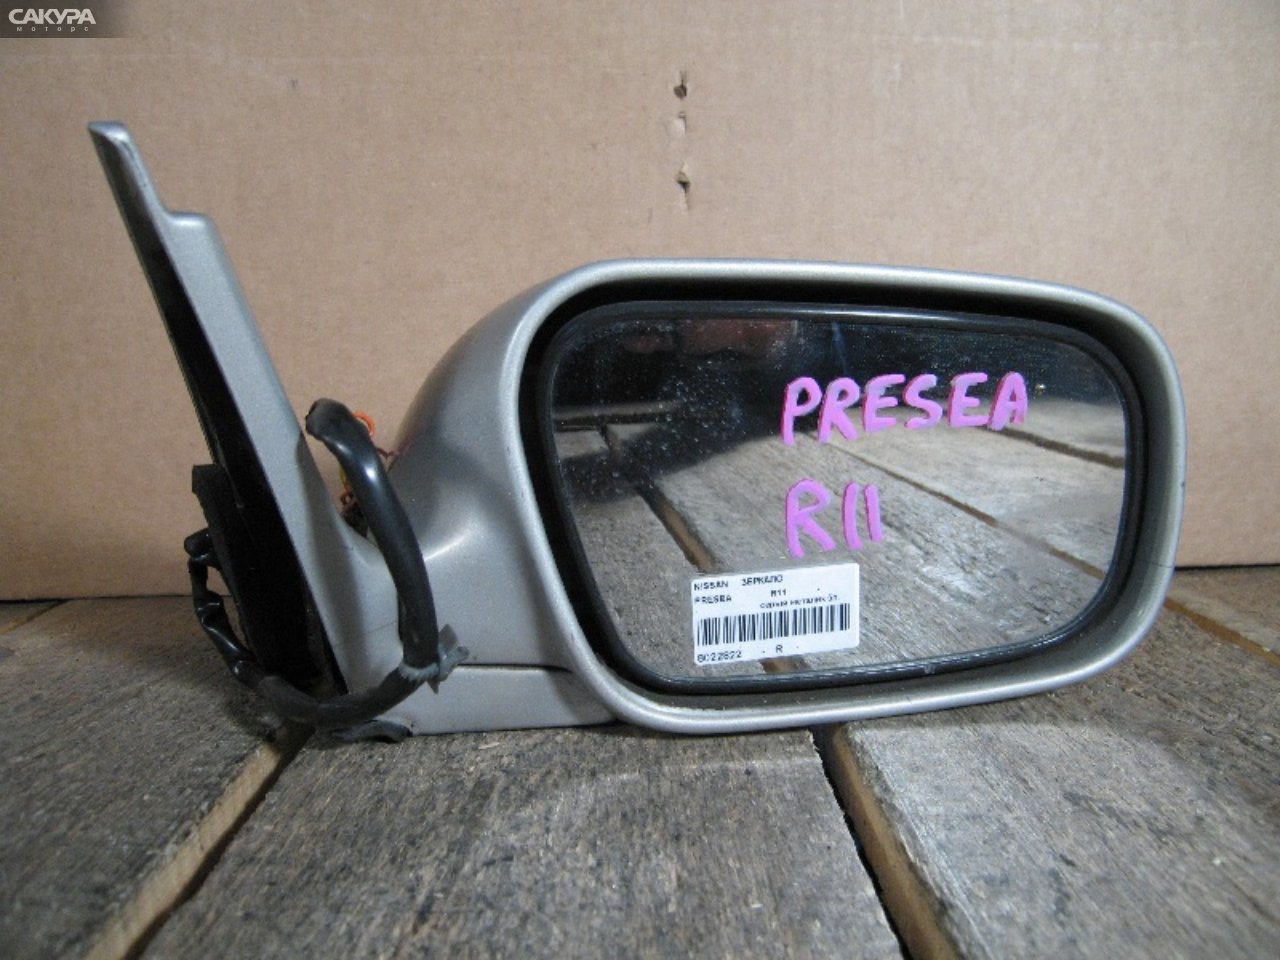 Зеркало боковое правое Nissan Presea R11: купить в Сакура Абакан.